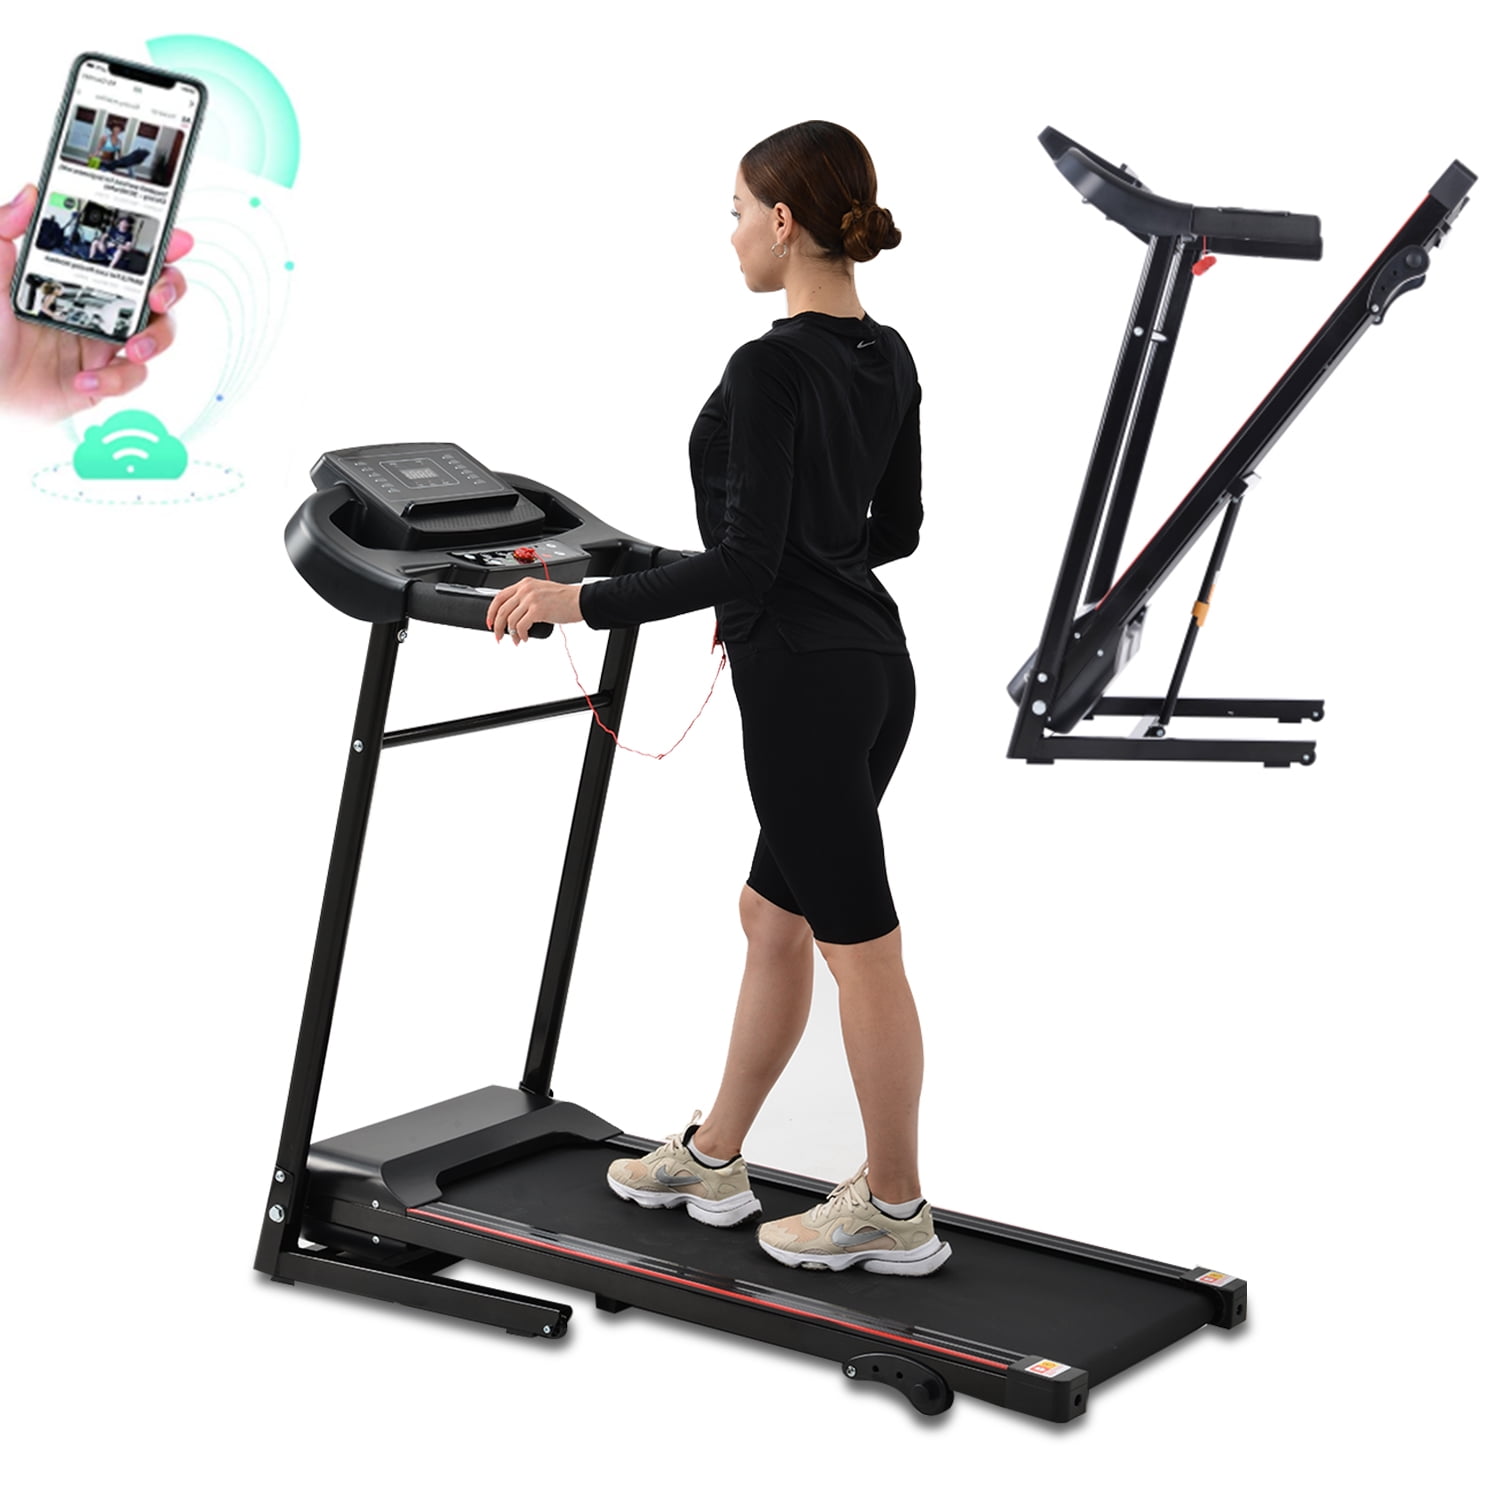 Model Number PFTL700120 Proform 700 LT Treadmill Walking Belt 